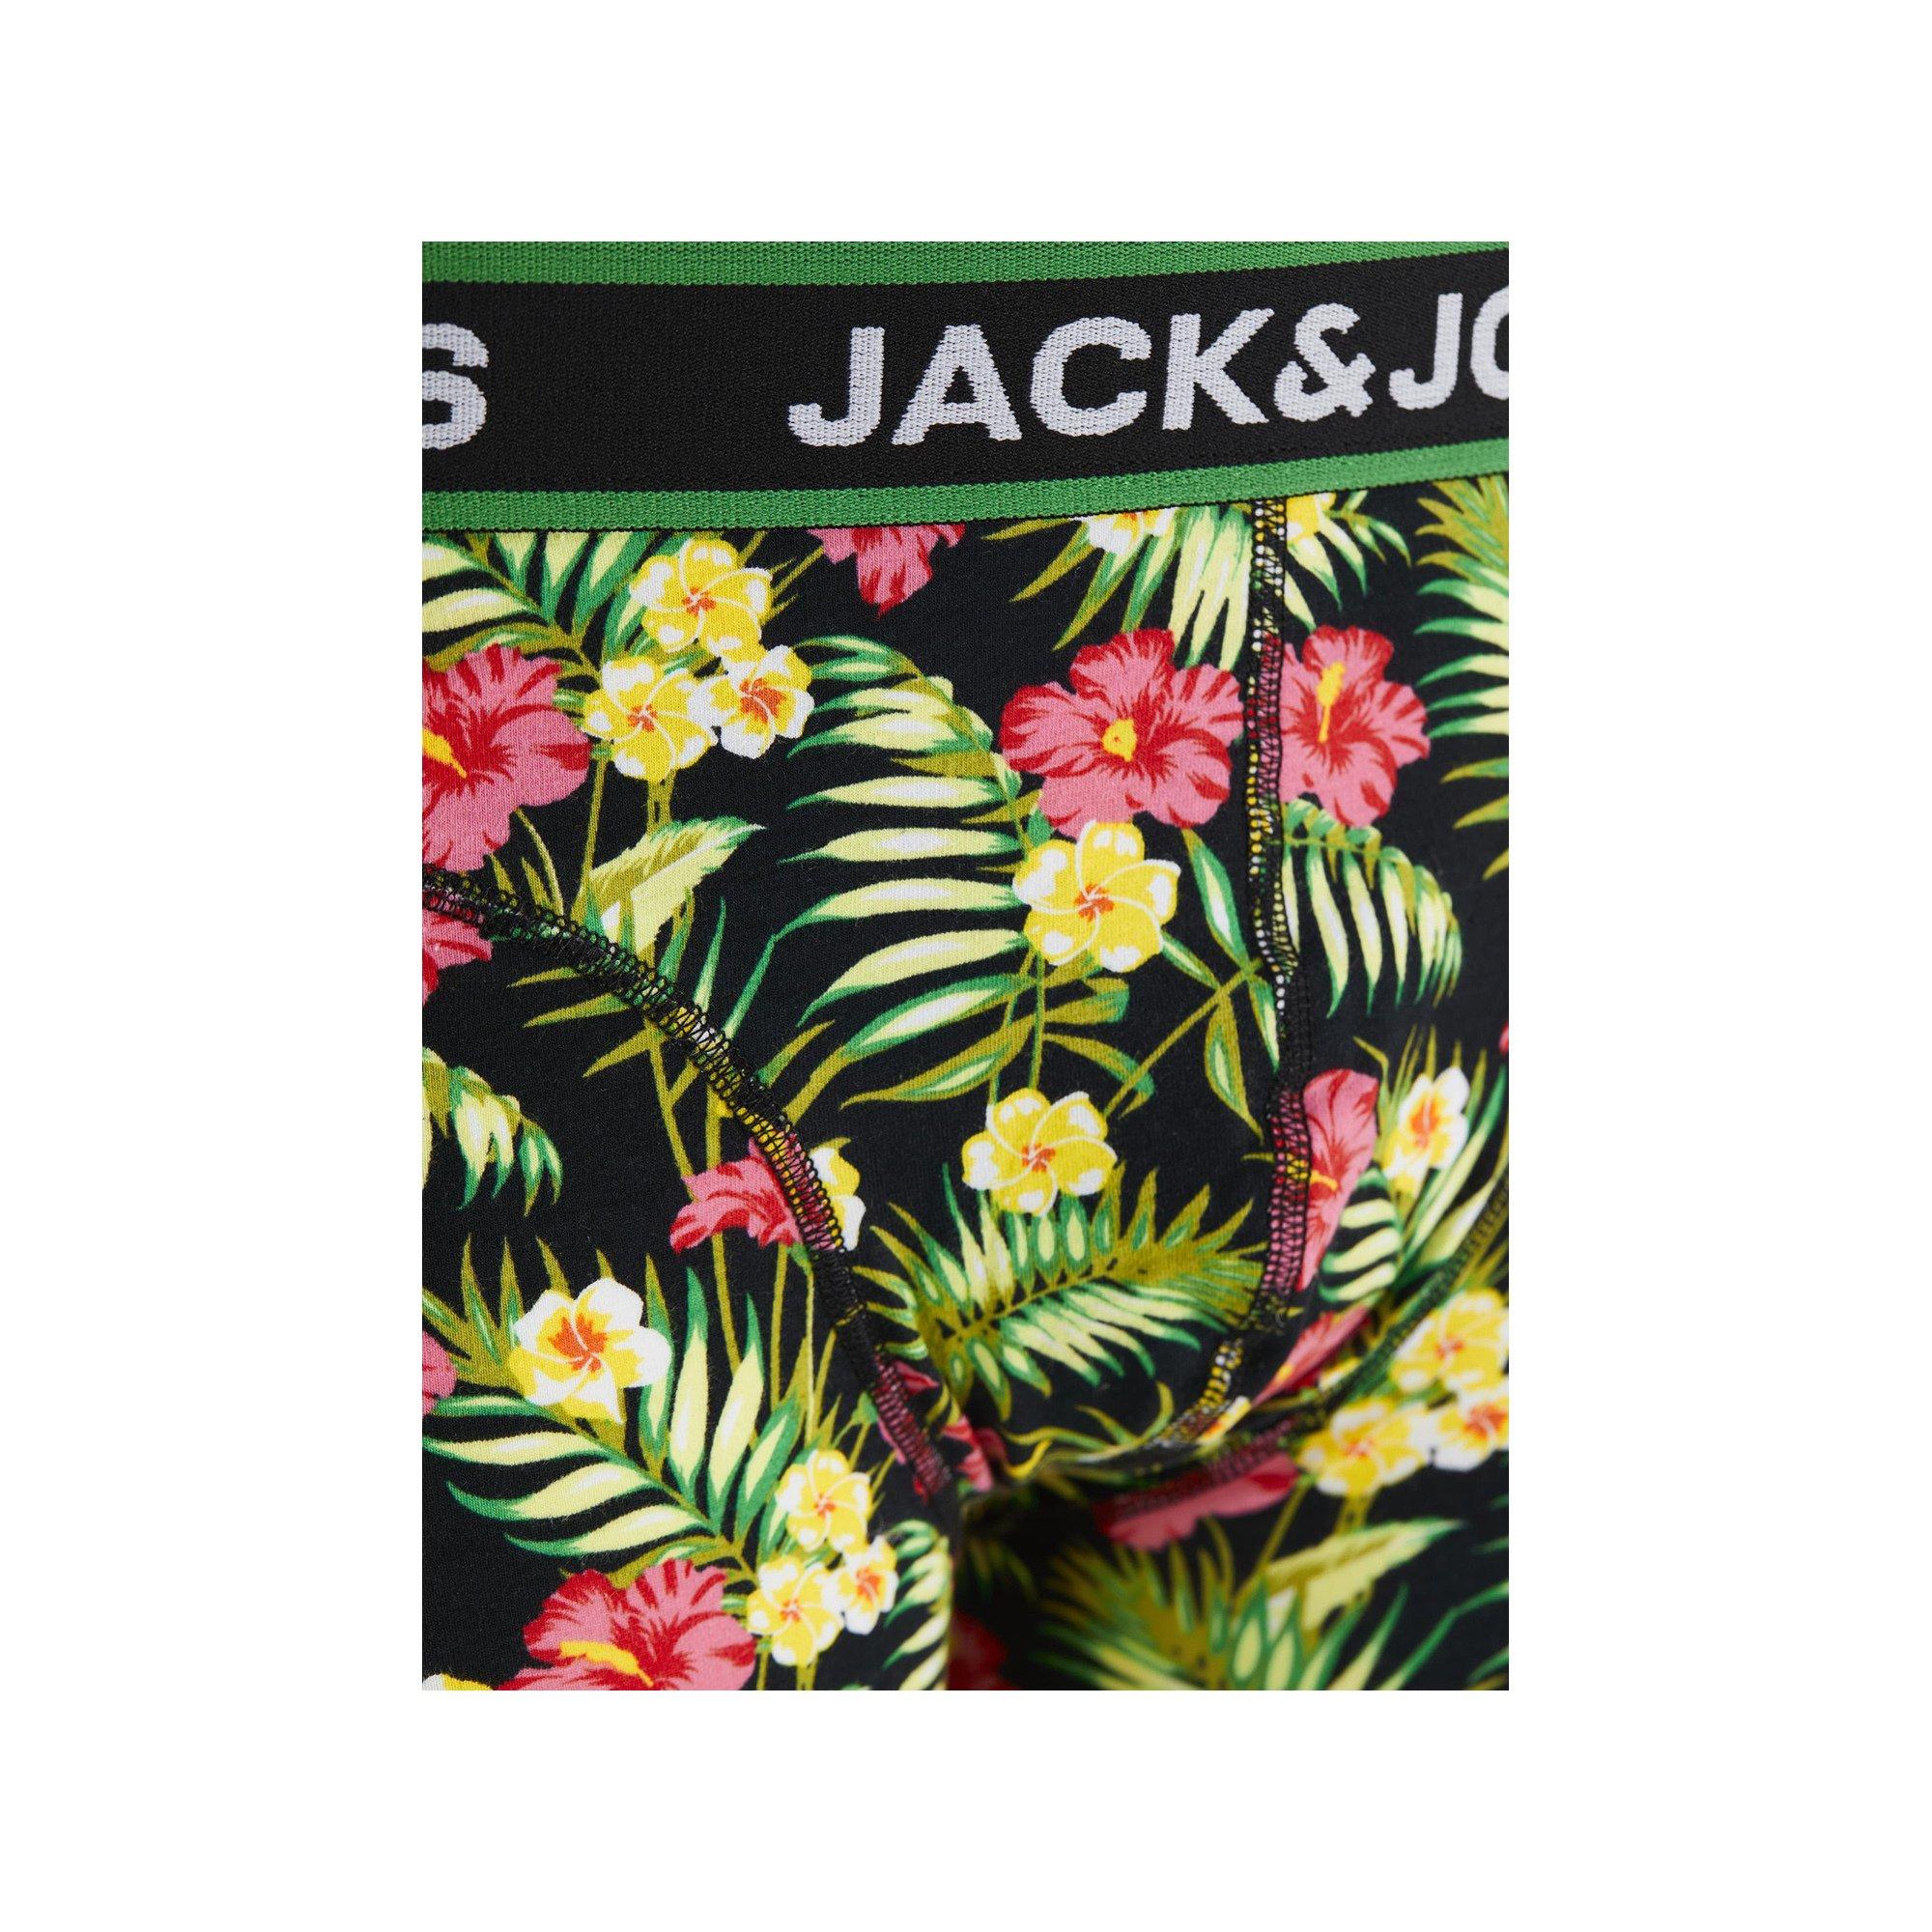 JACK & JONES JACPINK FLOWERS TRUNKS 3P Triopack, Pantys 